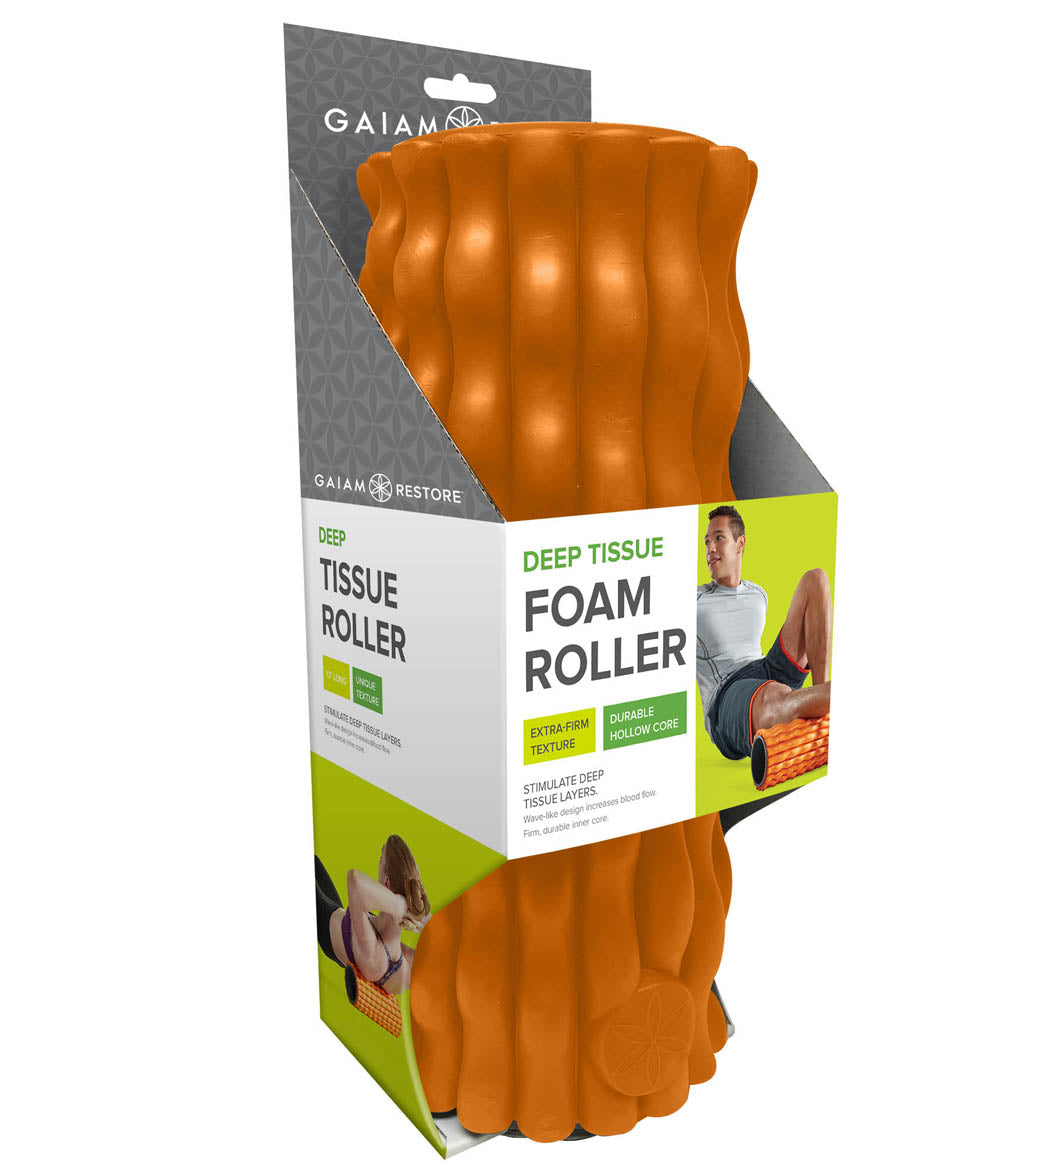 Restore Total Body Foam Roller - Gaiam